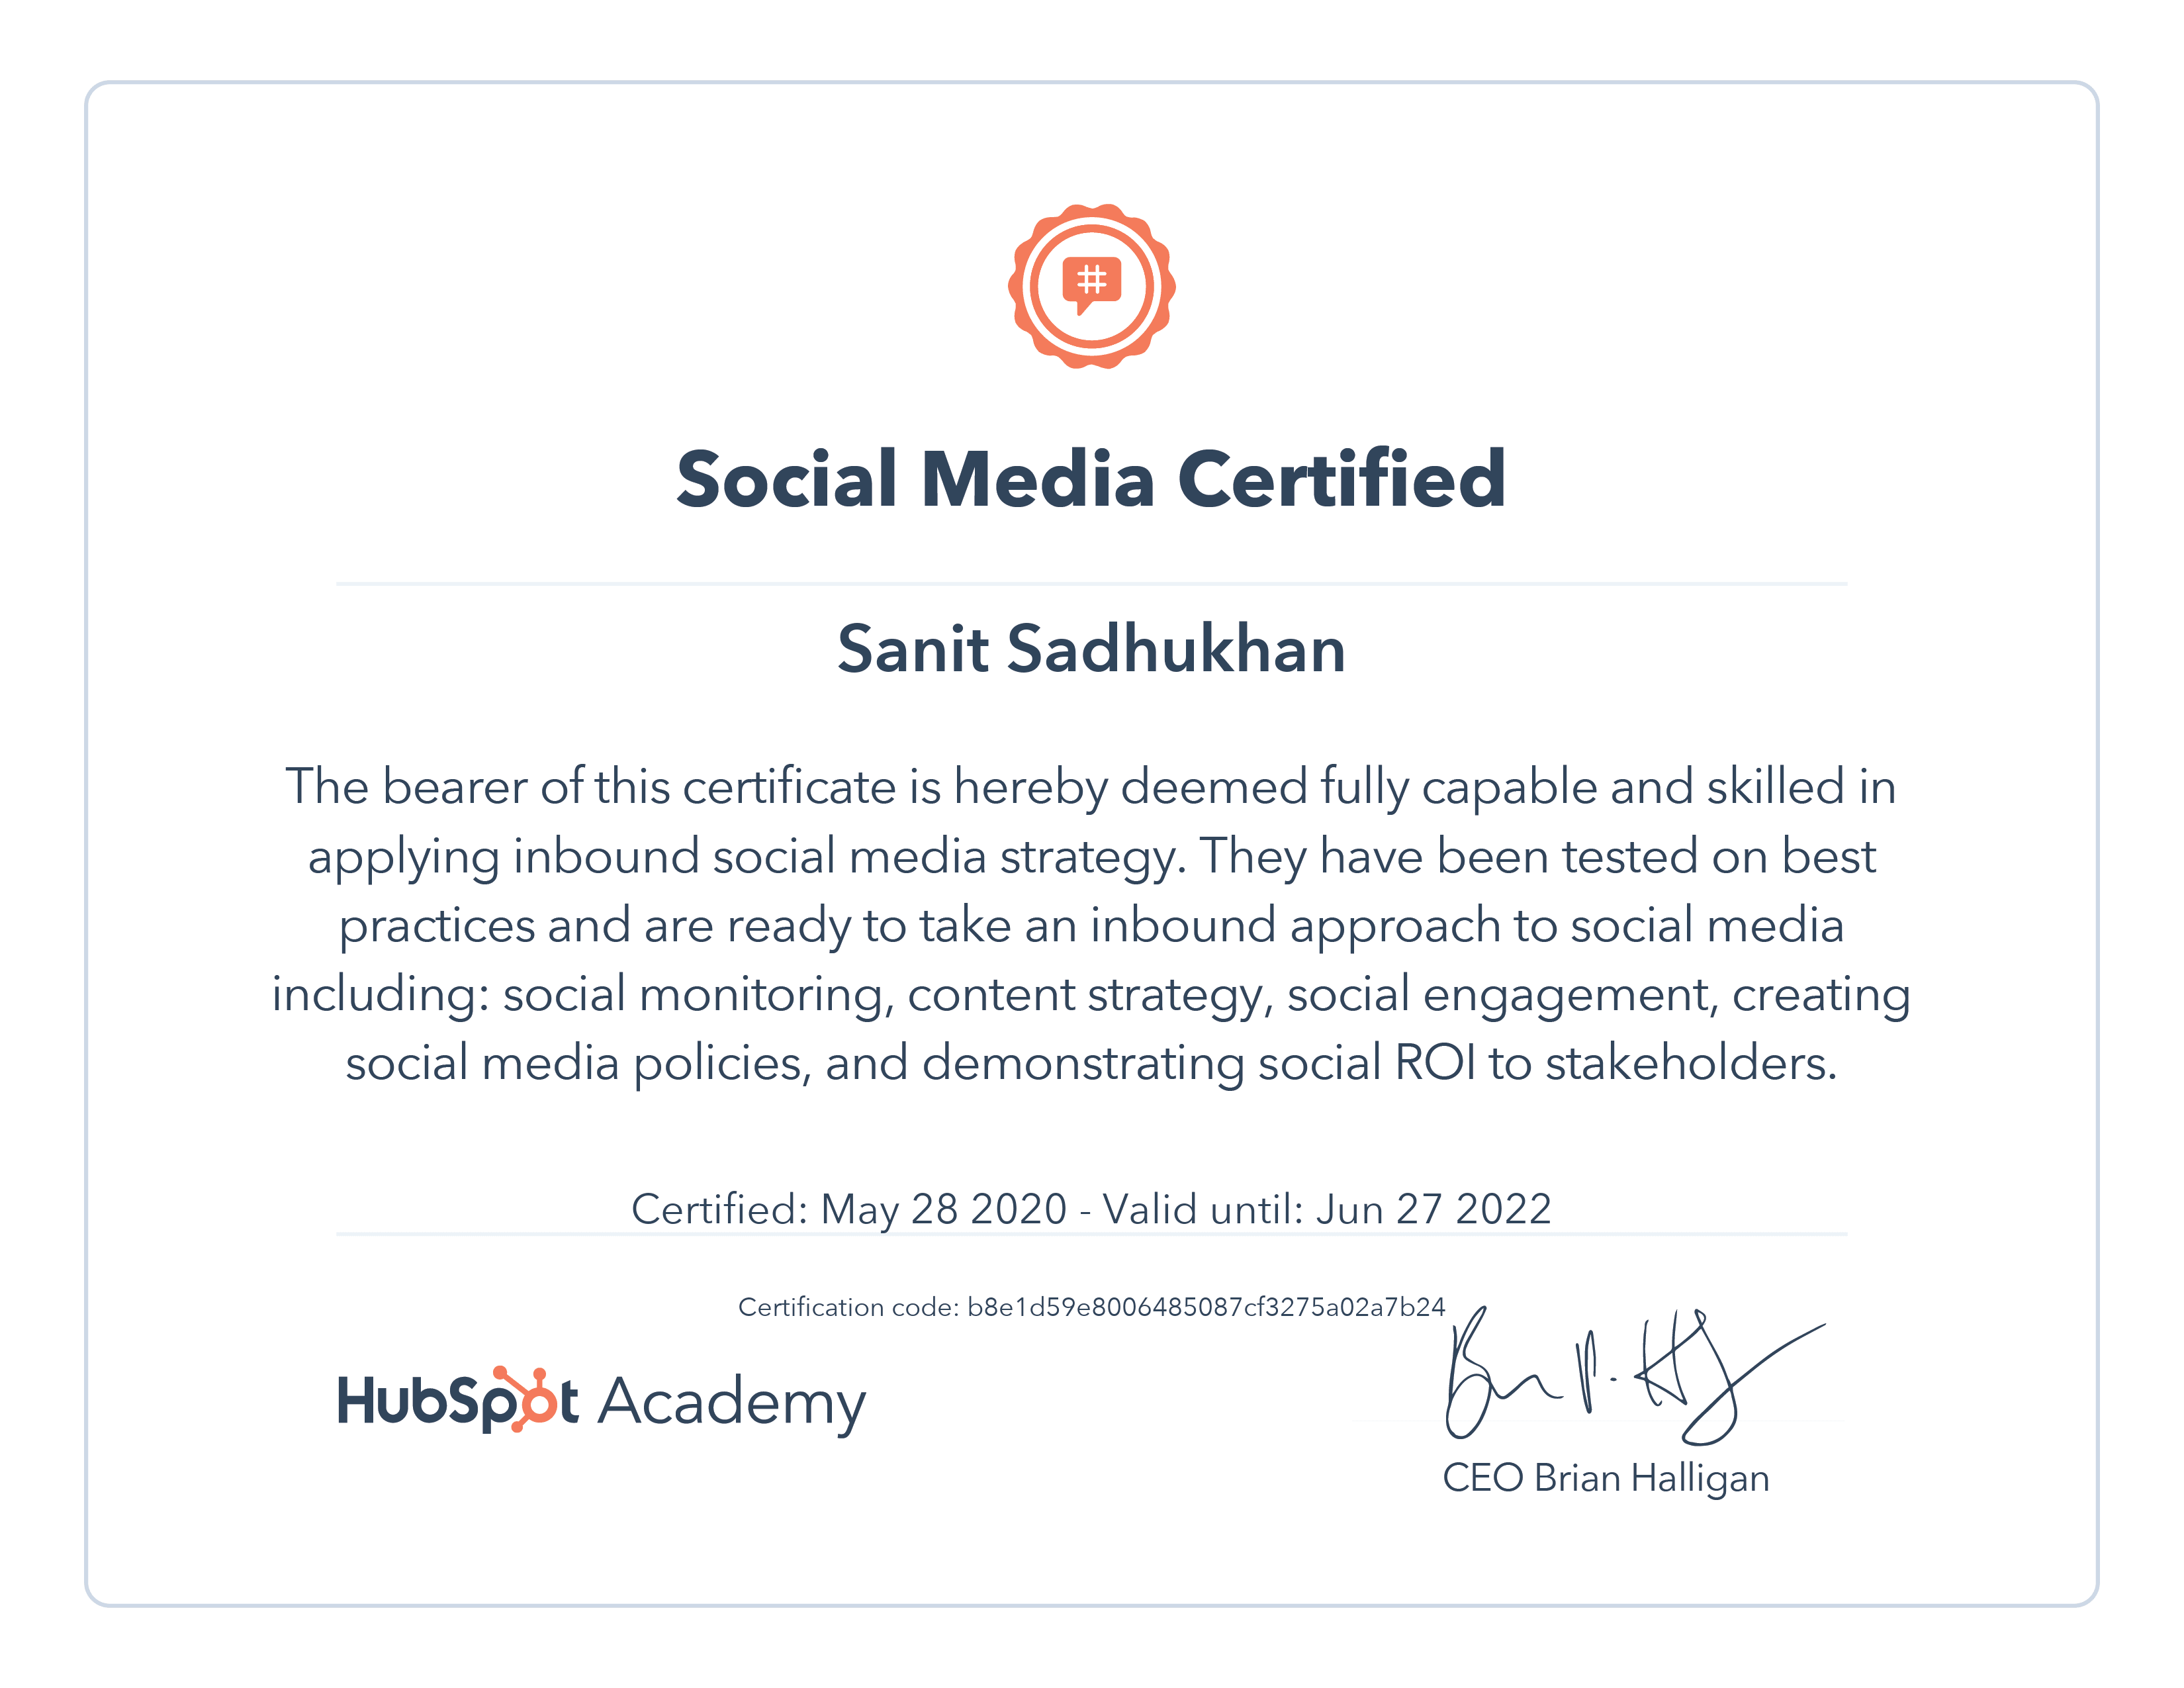 hubspot_certificate